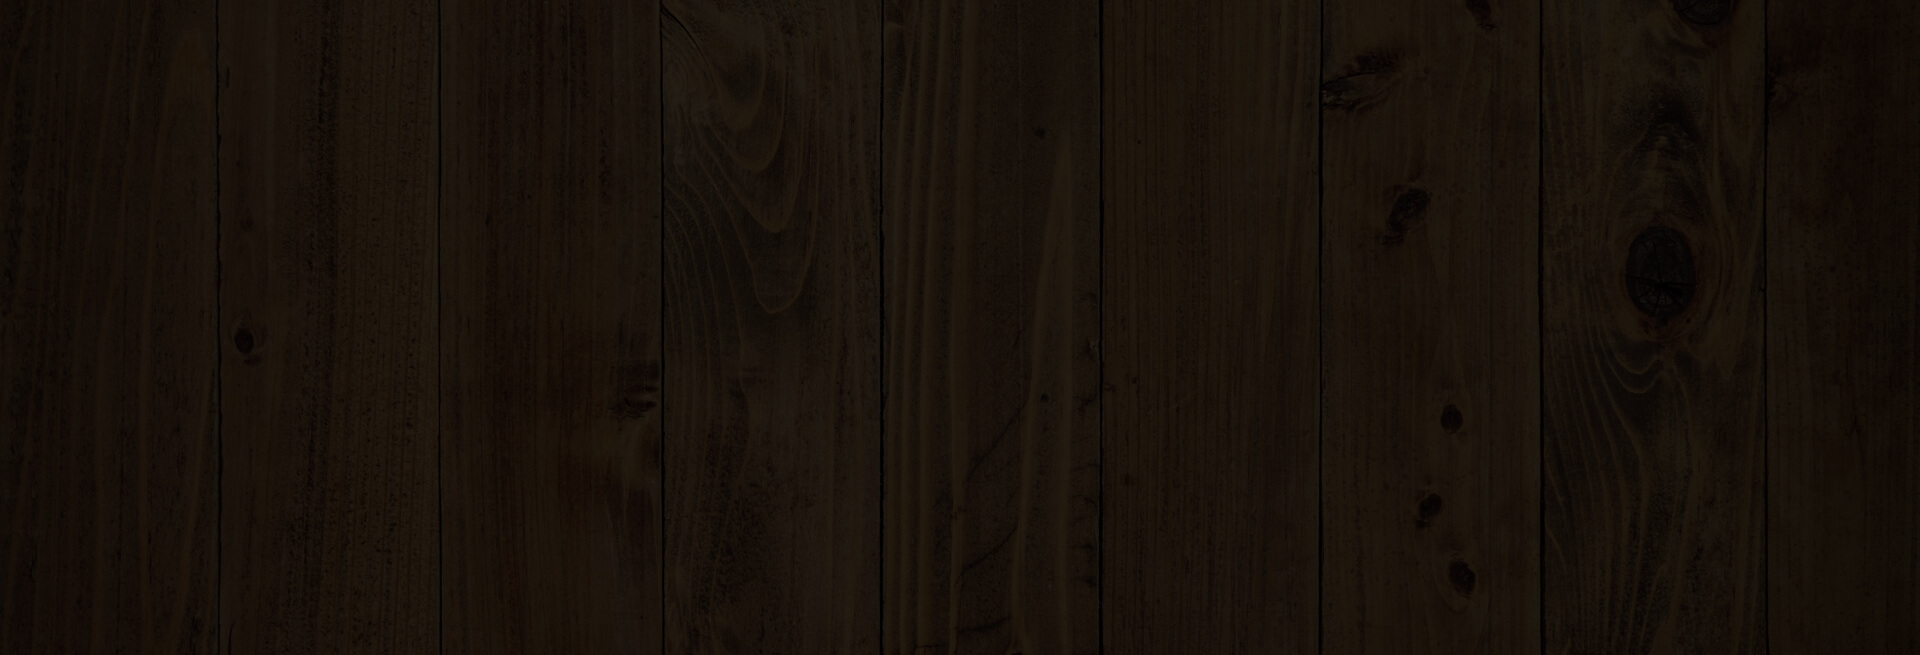 Drewniana altana na taras, cena: 6600.00 zł,  Weronika - 3x3m 